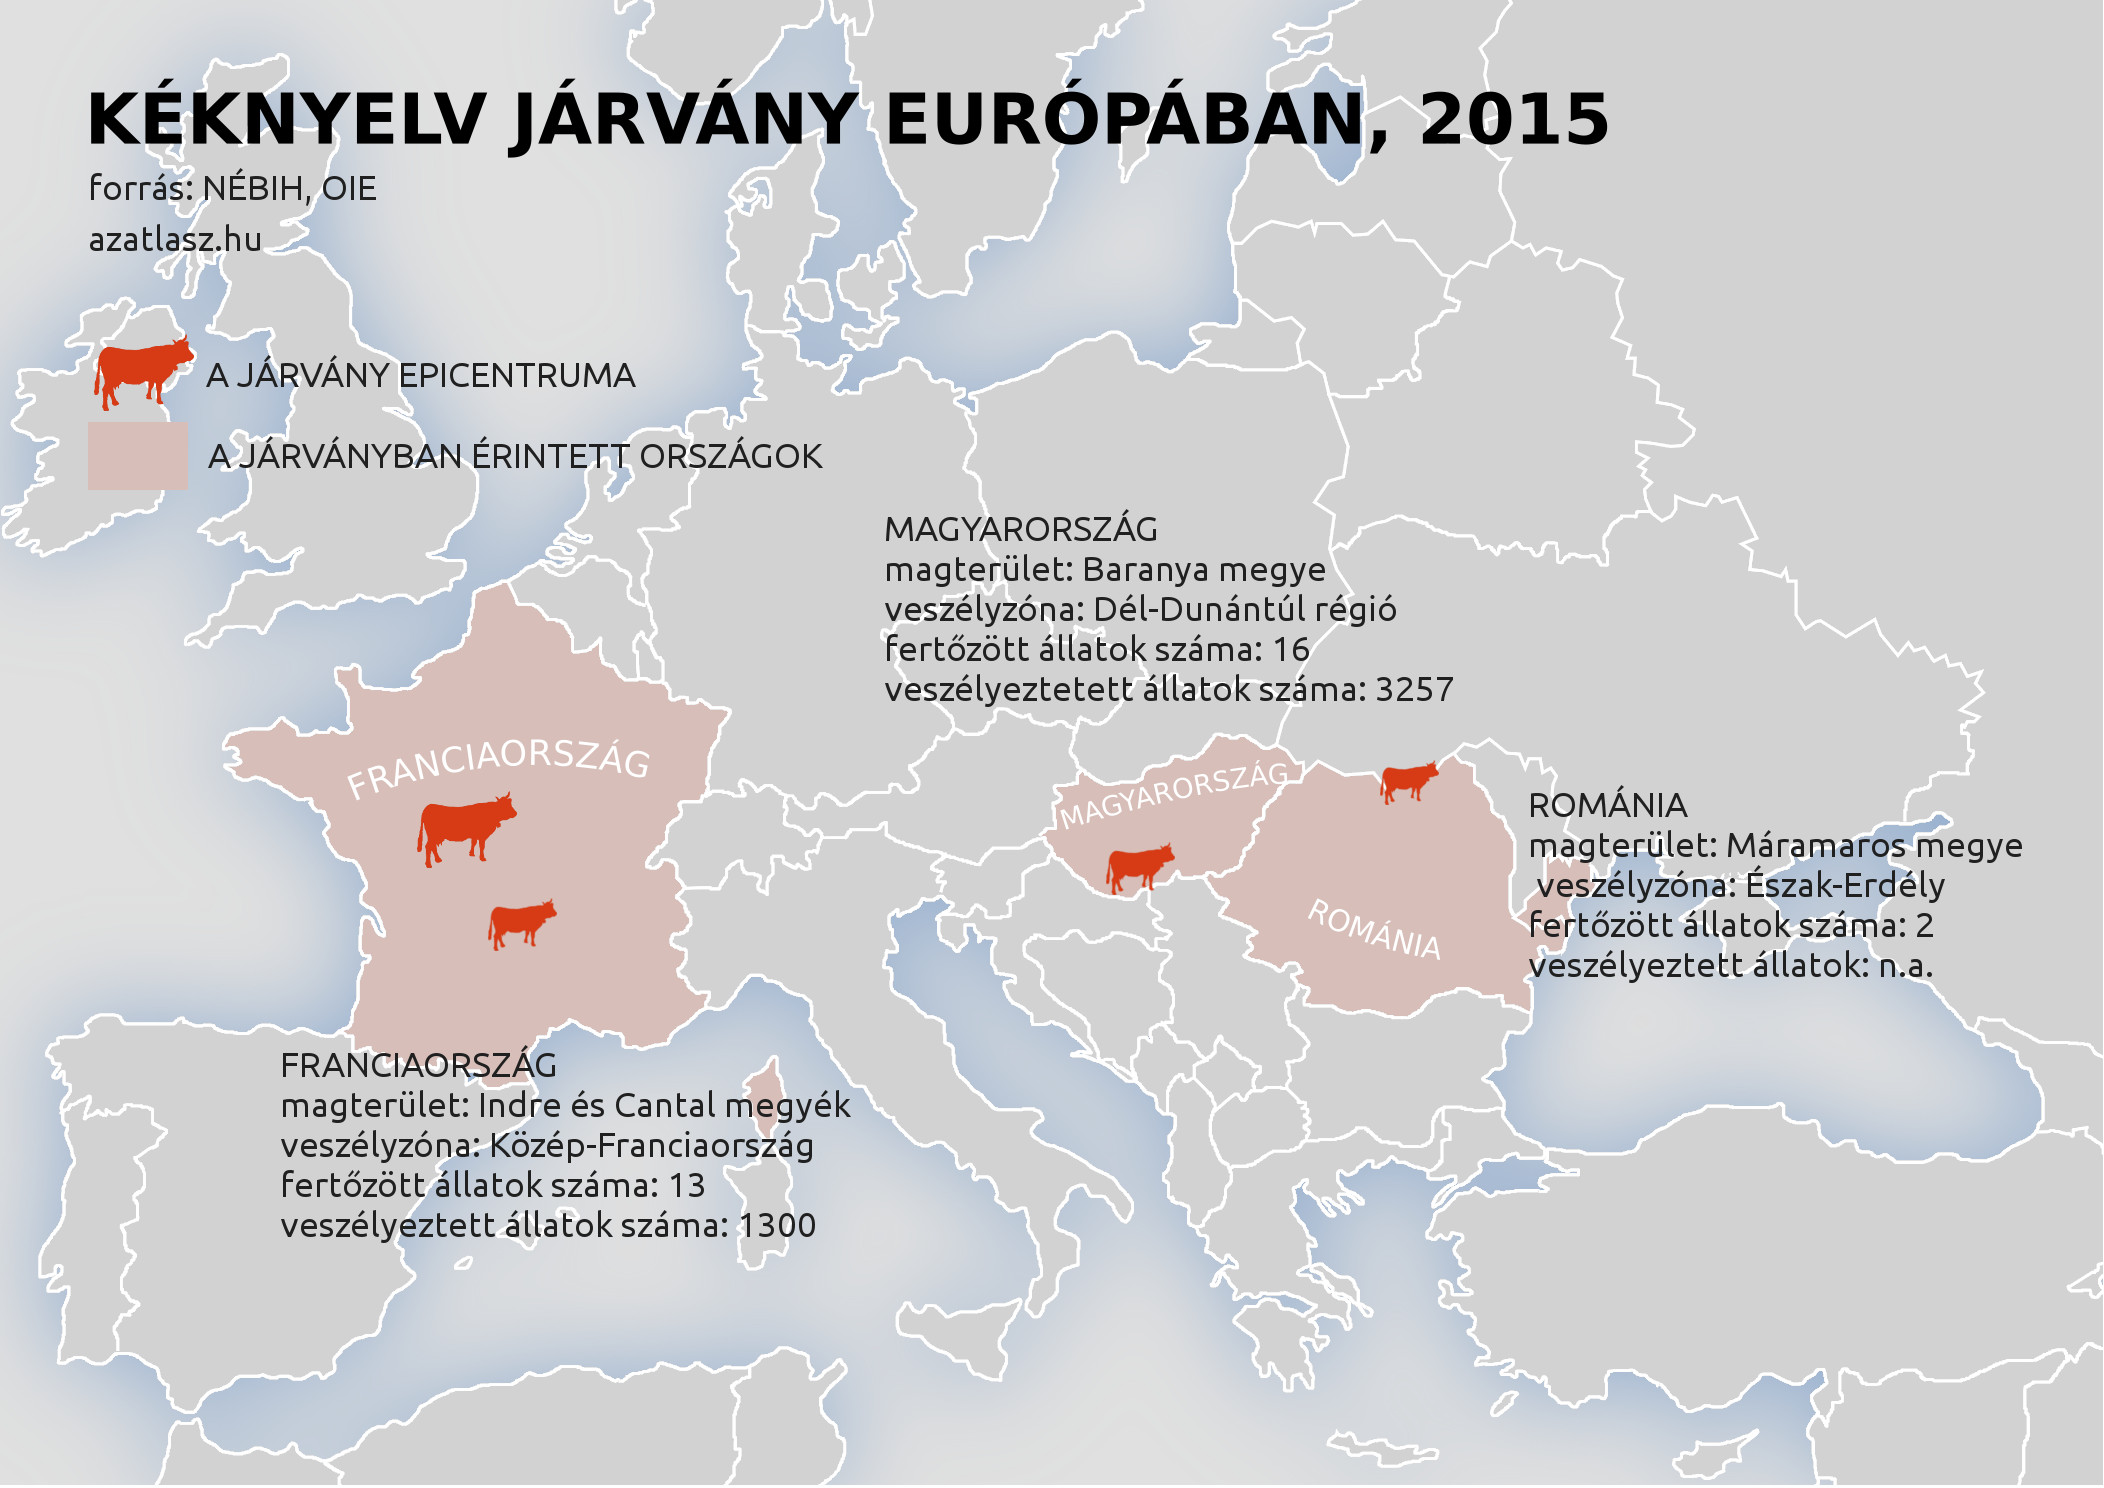 Kéknyelv járvány Európában, 2015